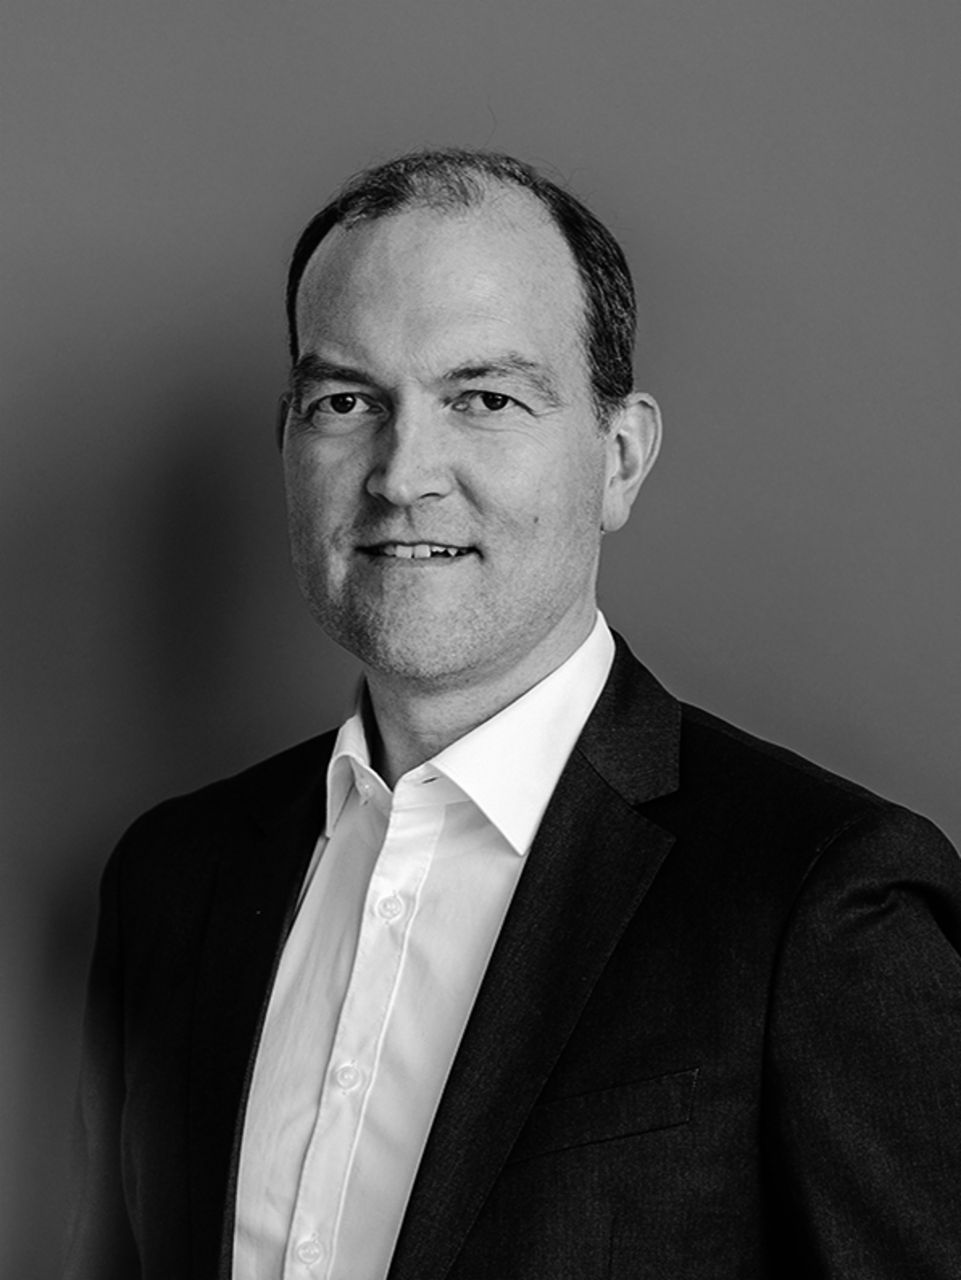 Portraitfoto von Dr. Michael Jackstein, Mitglied des Vorstands der TRATON SE, verantwortlich für Finanzen und Unternehmensentwicklung sowie Personal, in schwarz-weiß